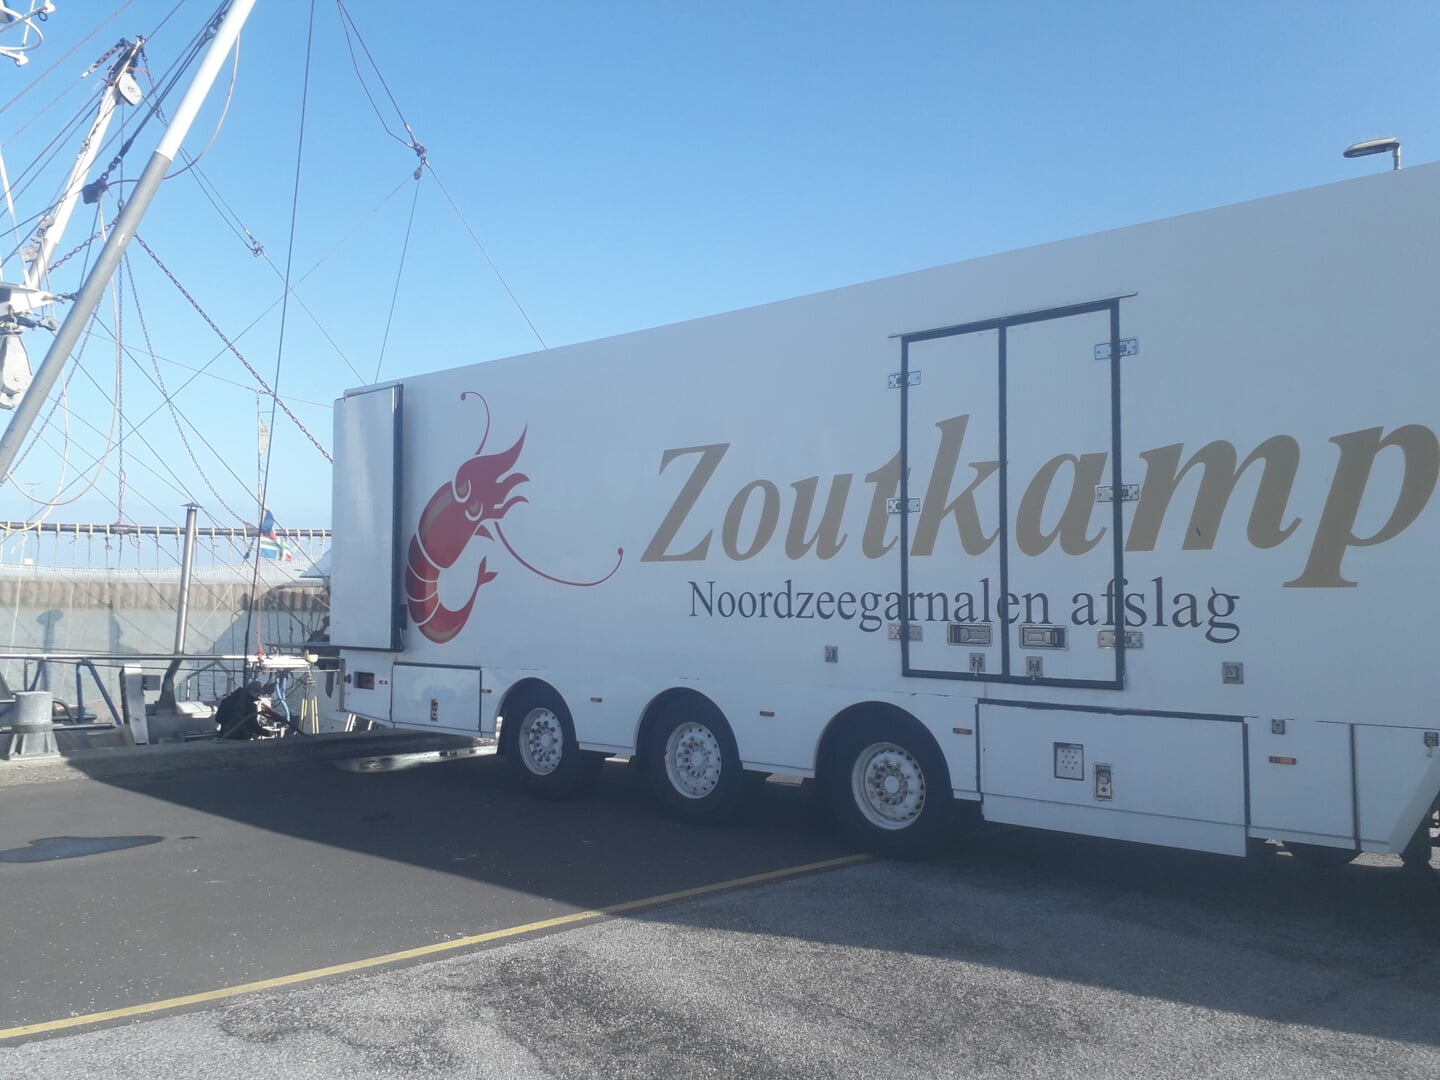 H Logistieke samenwerking in Havneby. Eén transportwagen voor vijf vangsten naar Zoutkamp, Lauwersoog en Harlingen.